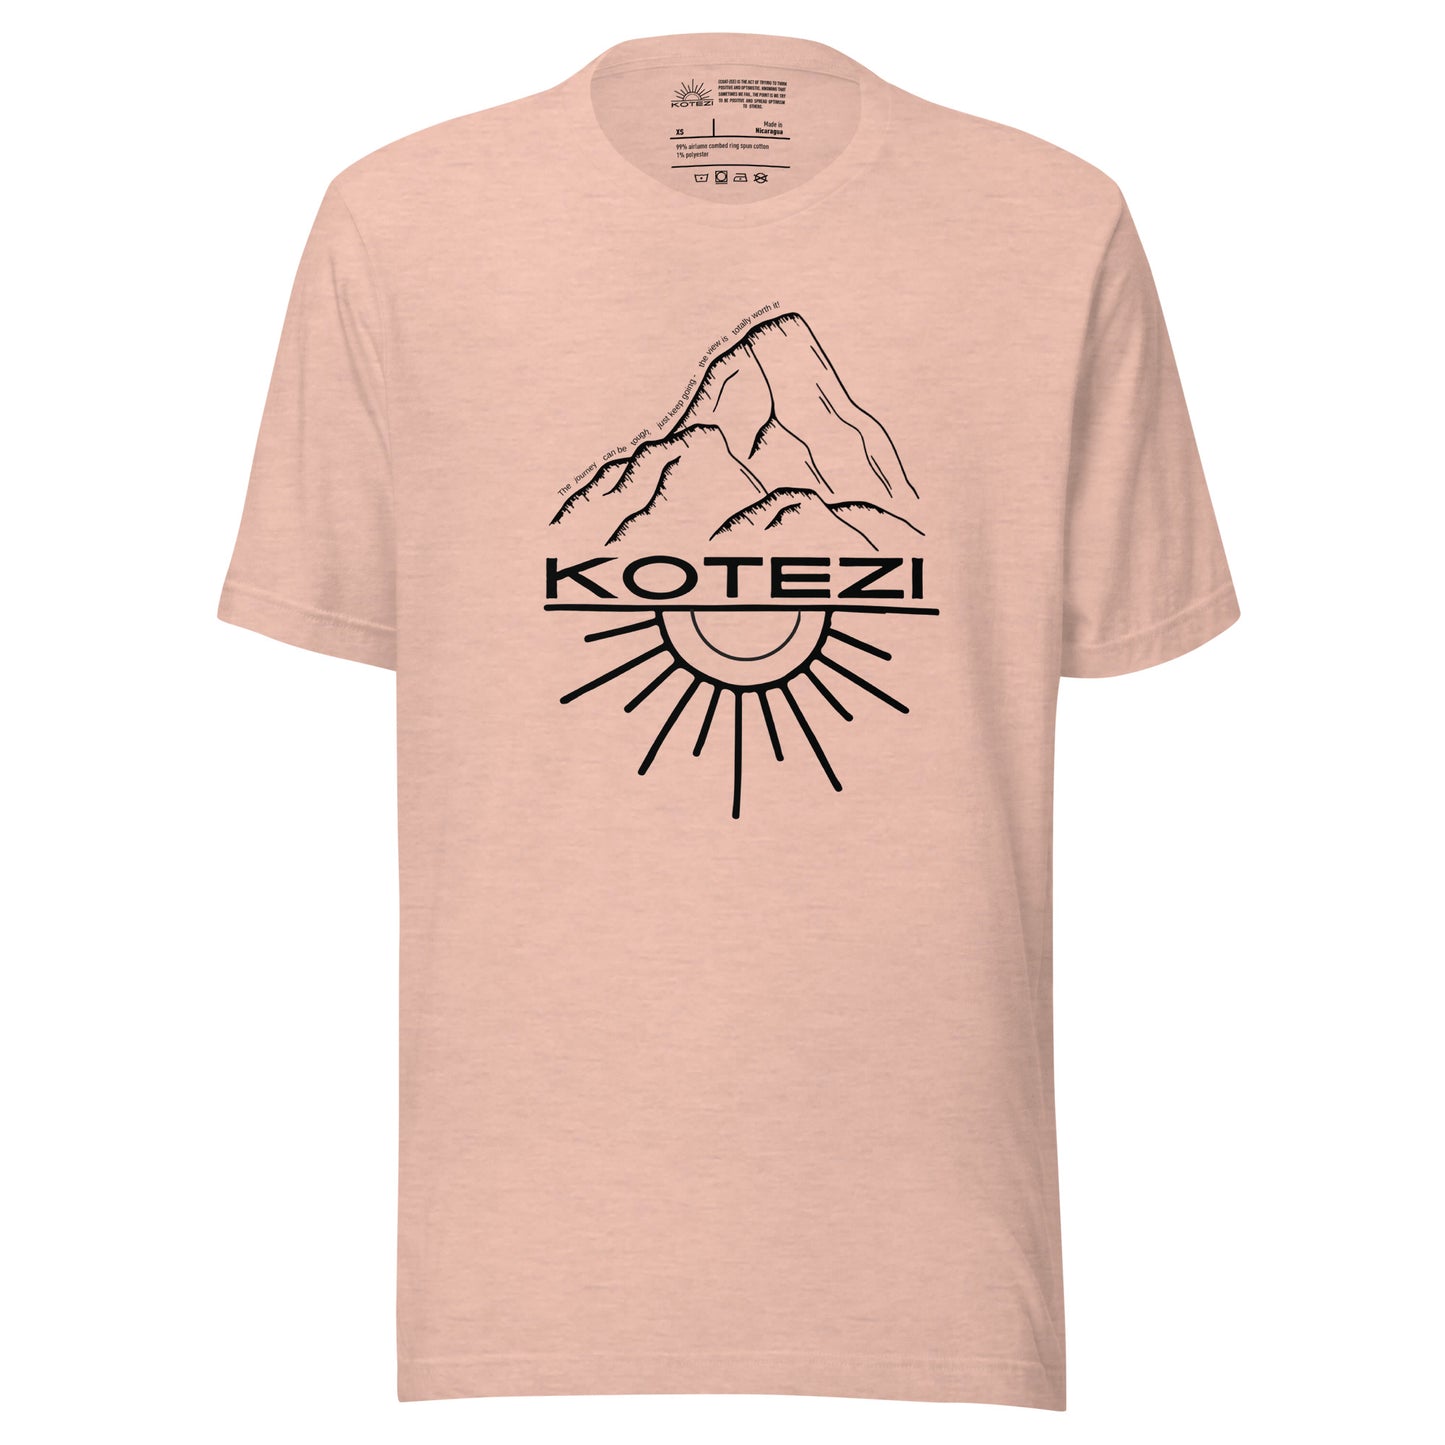 Mountain T Shirt